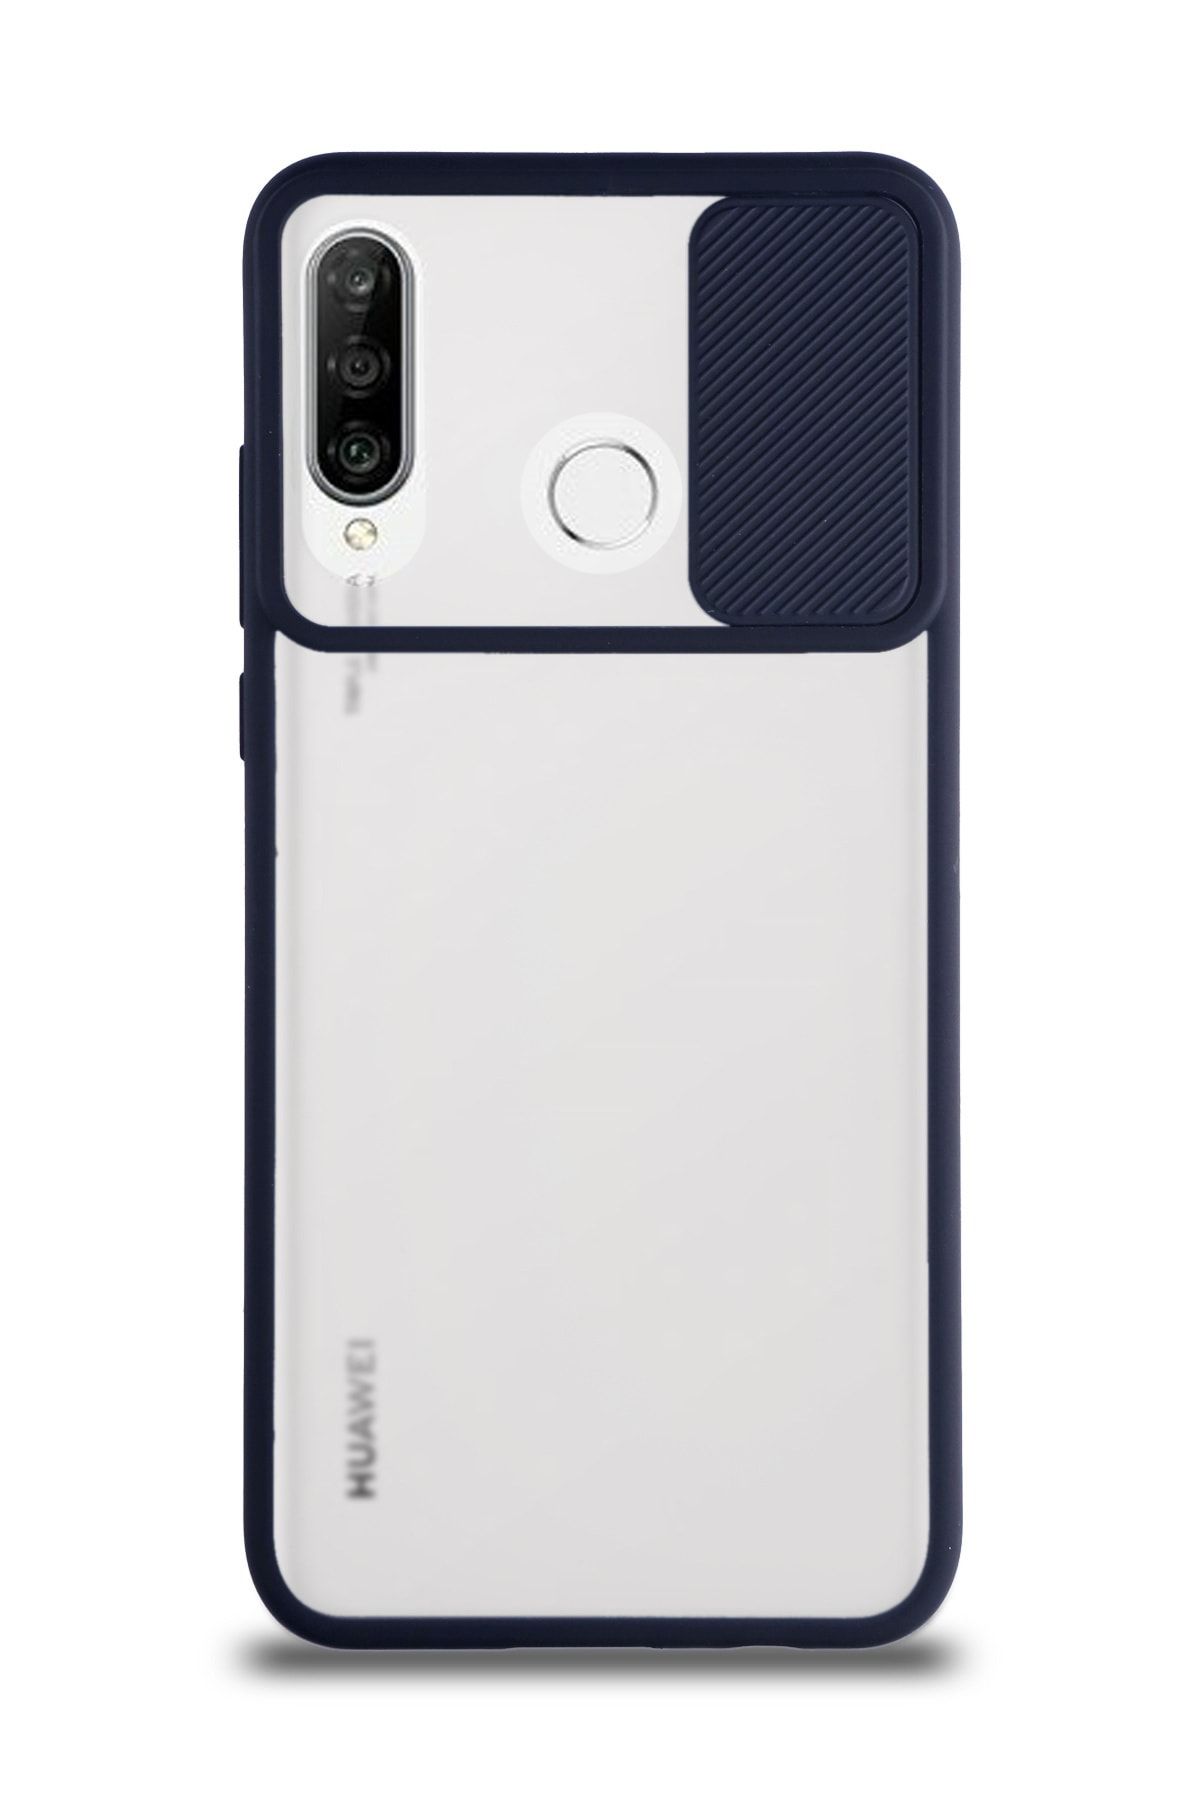 KZY İletişim Huawei P30 Lite Uyumlu Kapak Lensi Açılır Kapanır Kamera Korumalı Silikon Kılıf